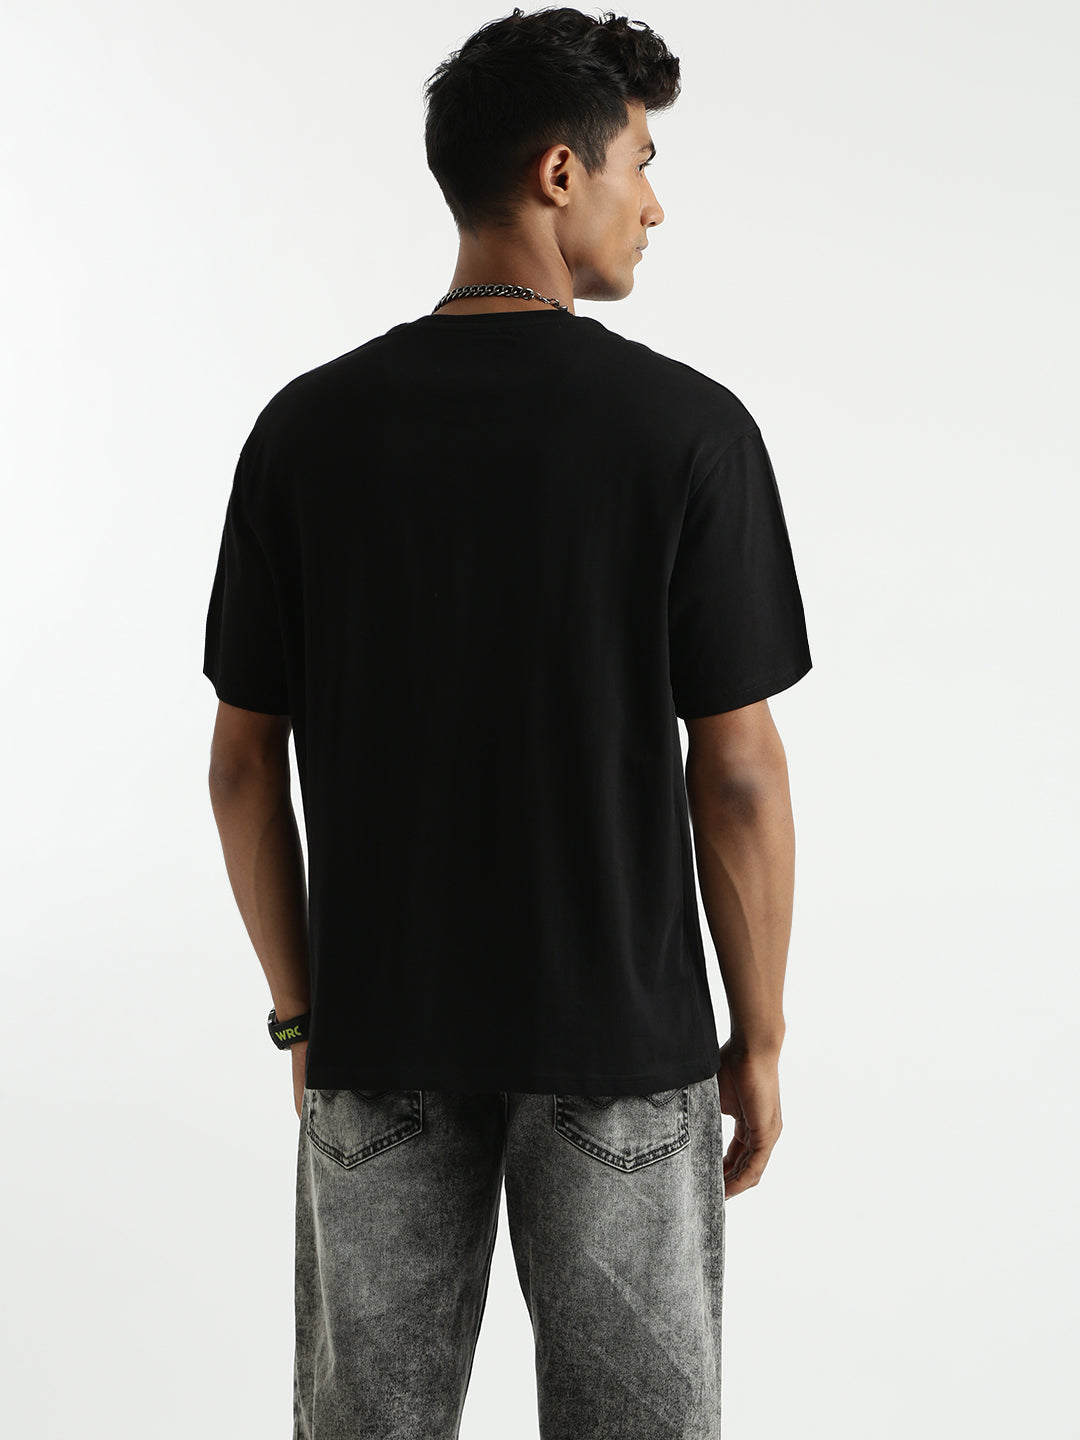 Wrogn X Spoyl Black T-Shirt